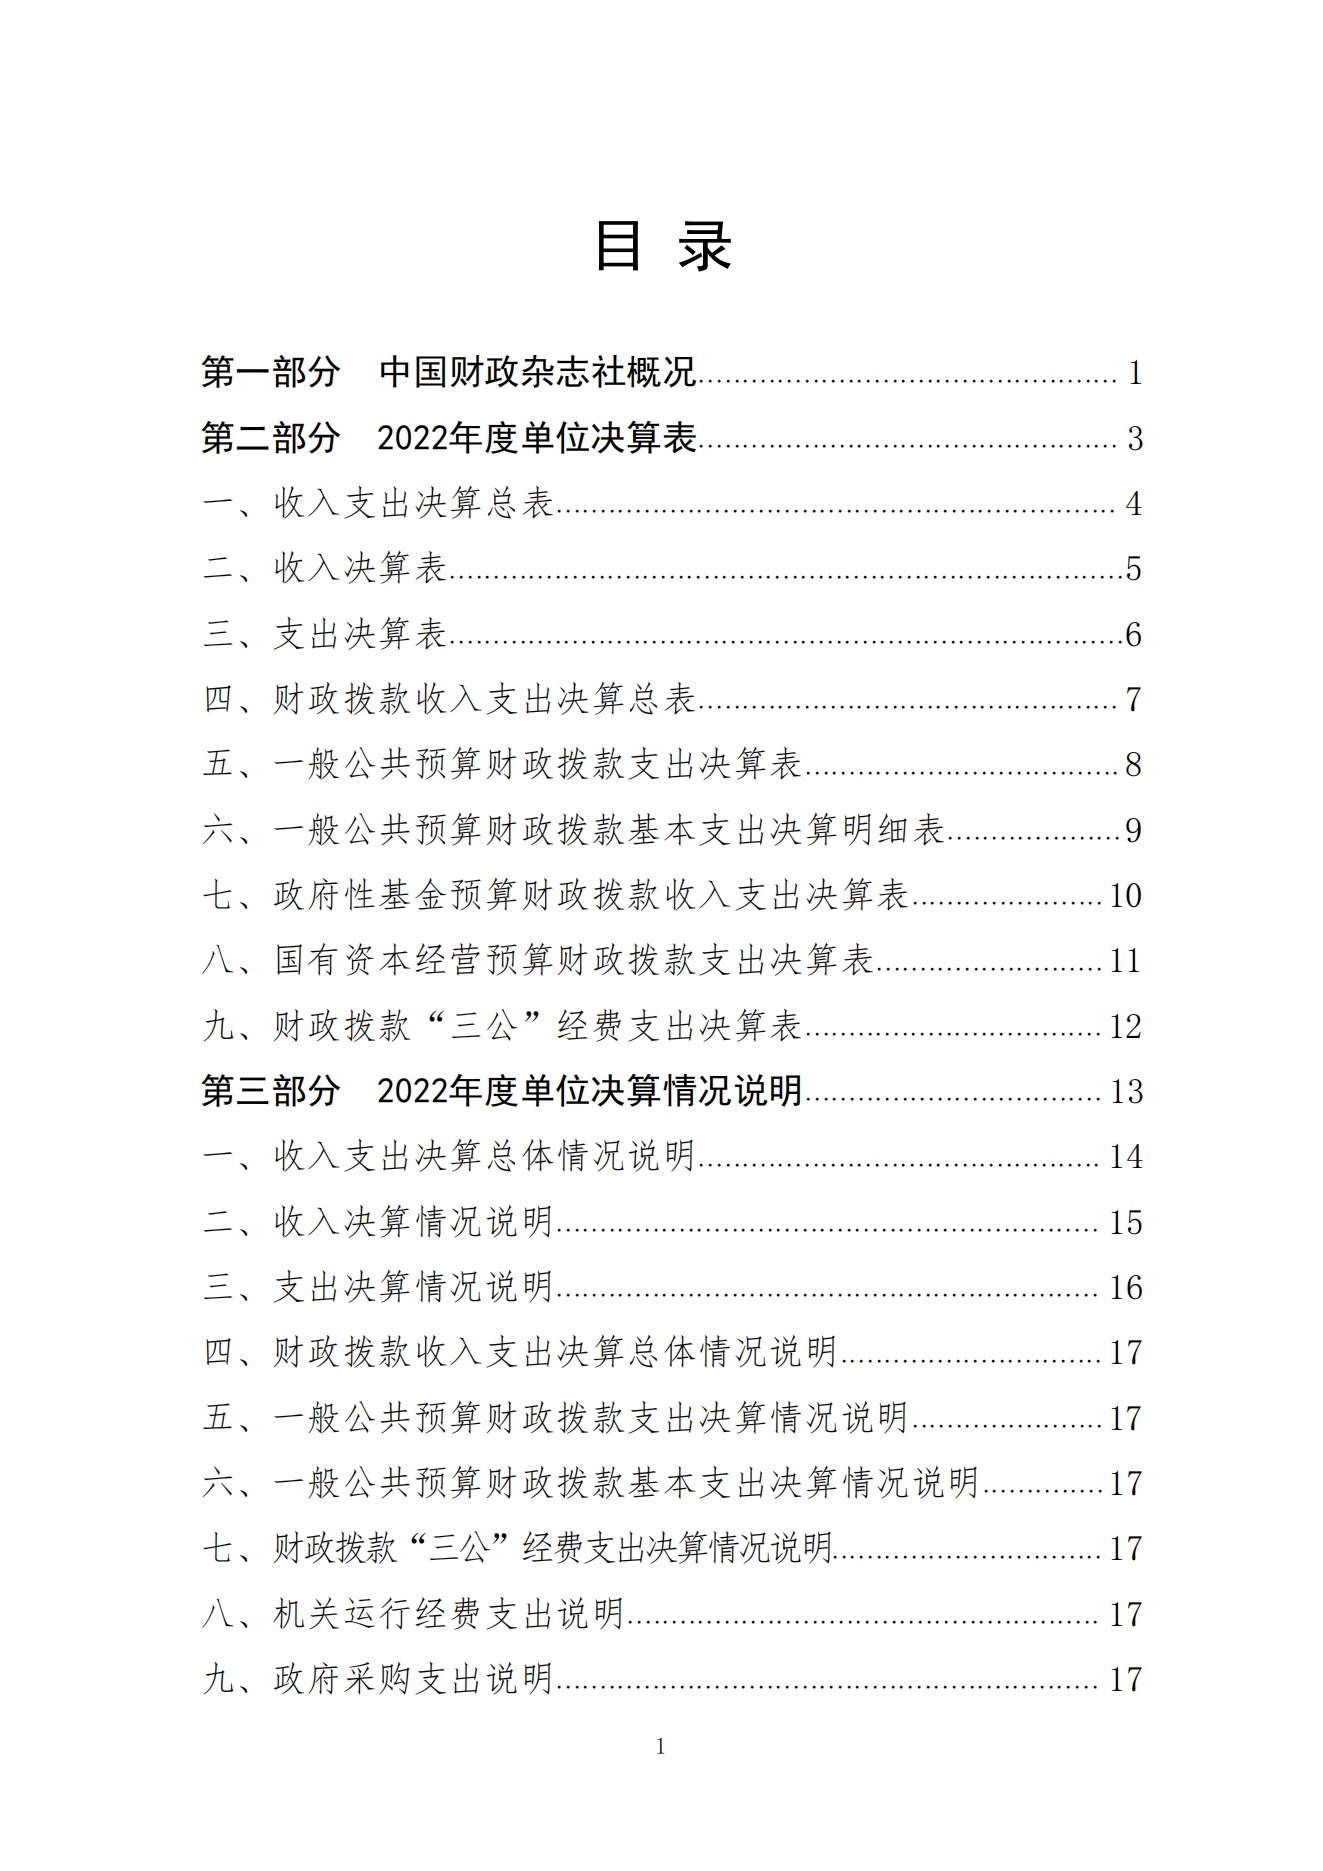 2023年8月7日 中国财政杂志社2022年度决算公开稿(1)_01.png